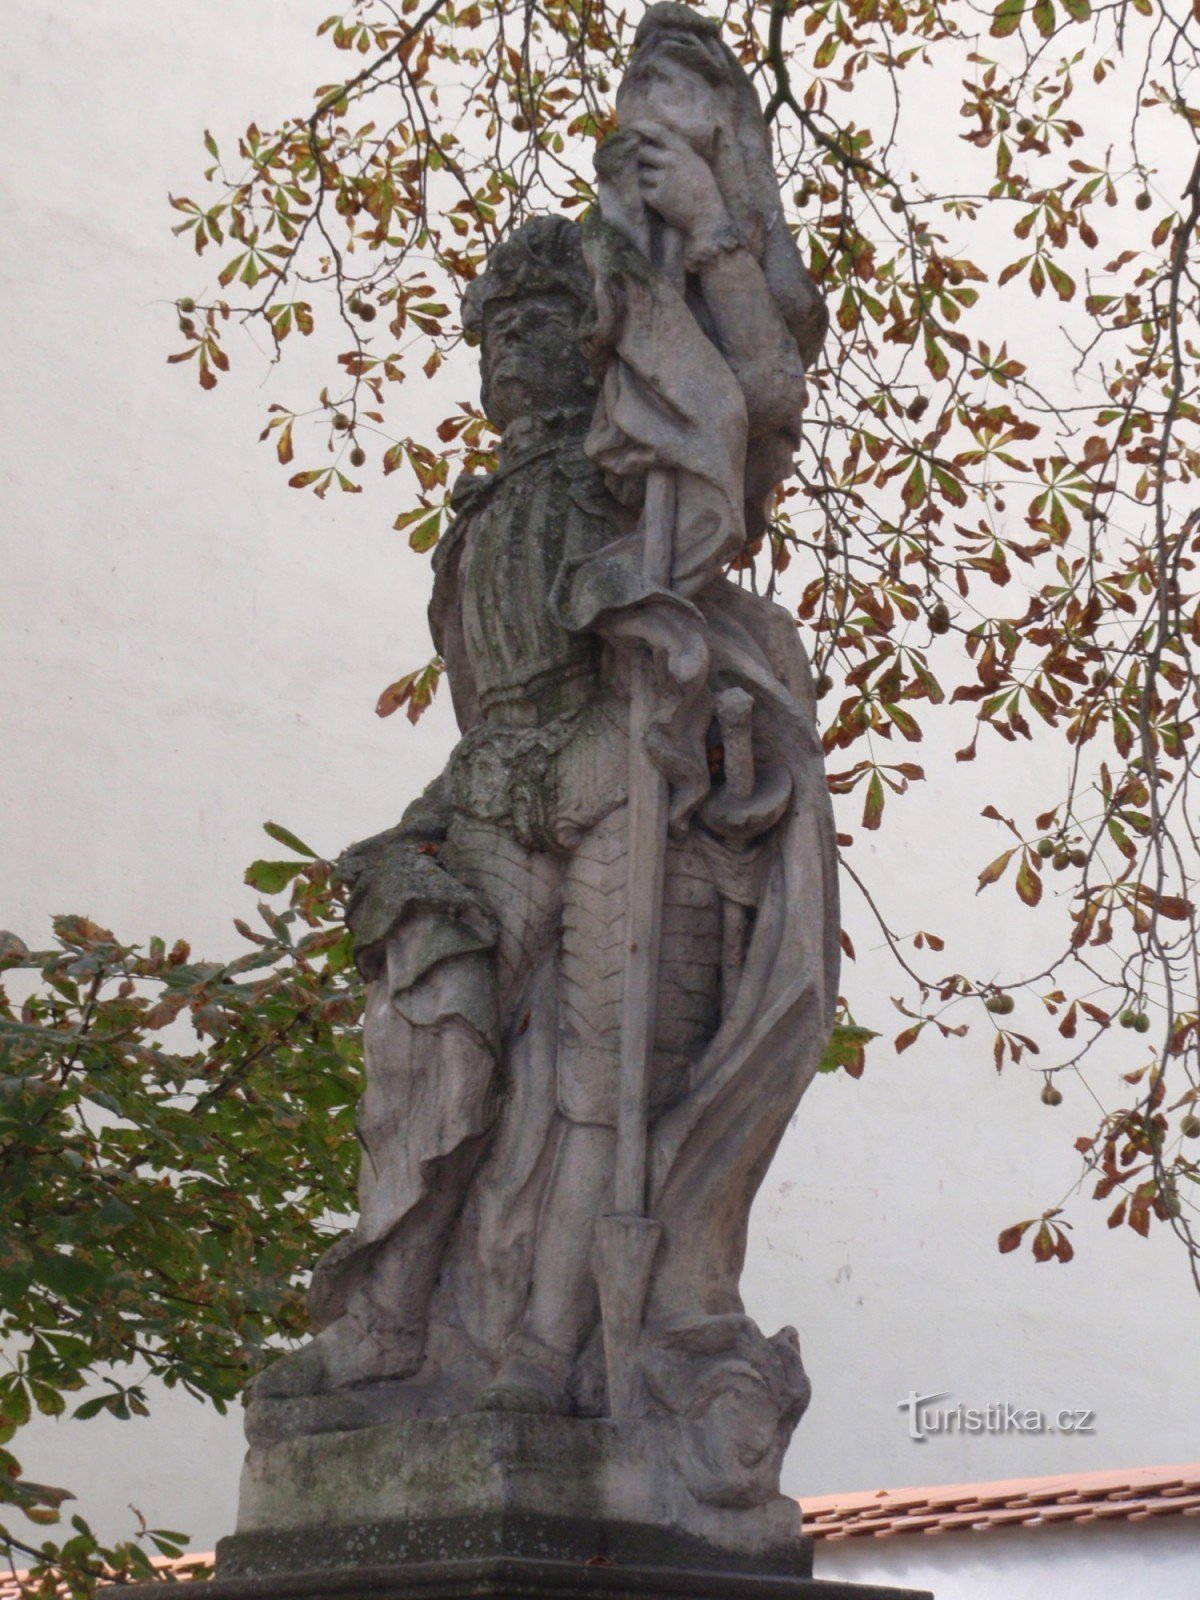 Posąg św. Floriana w Trzebiczu